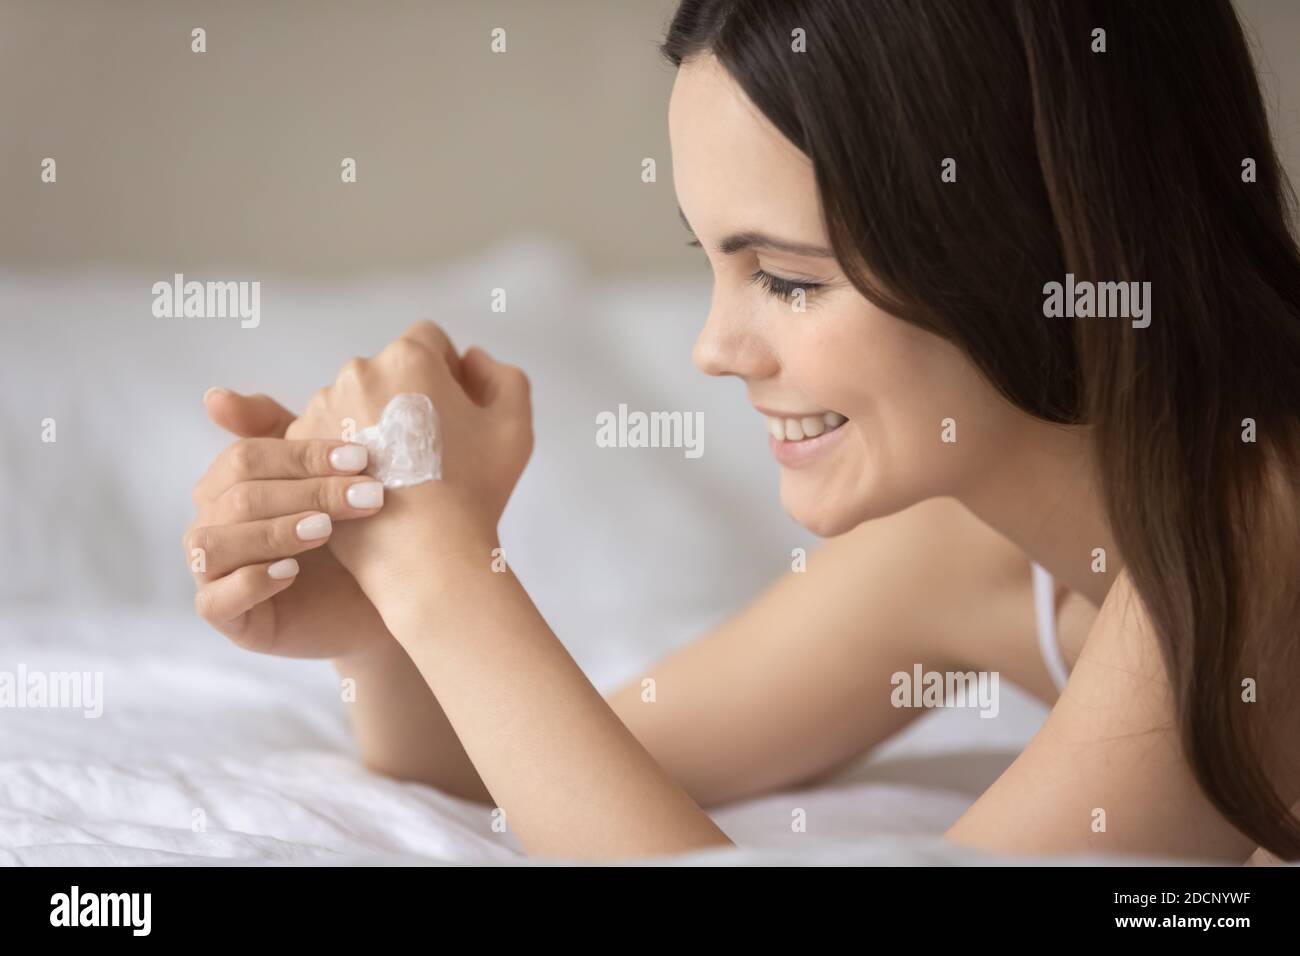 Inhalt junge Frau genießen Schönheitspflege Anwendung Lotion auf der Hand Stockfoto